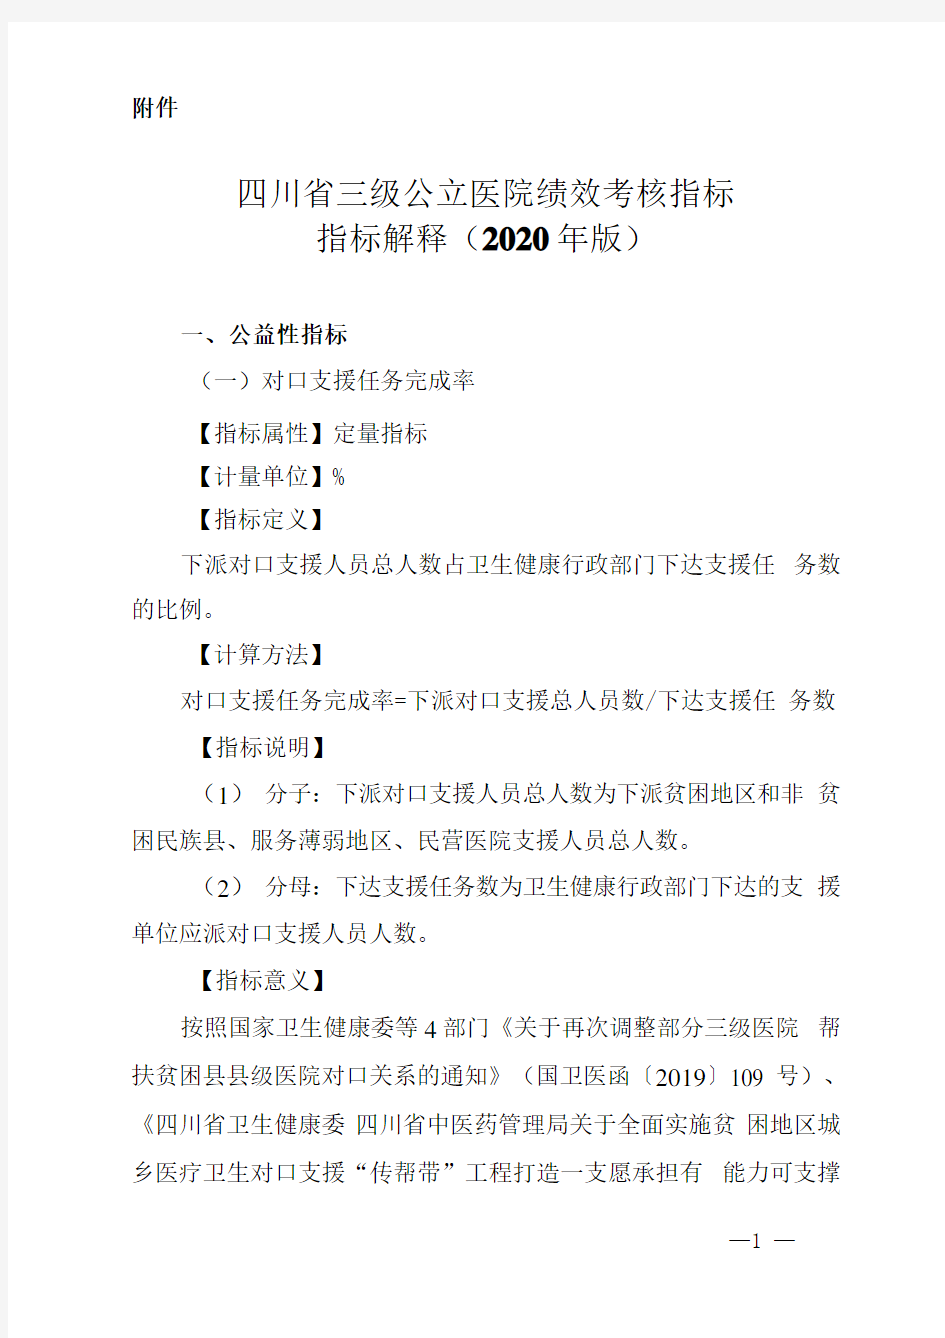 四川省三级公立医院绩效考核指标指标解释(2020年版)